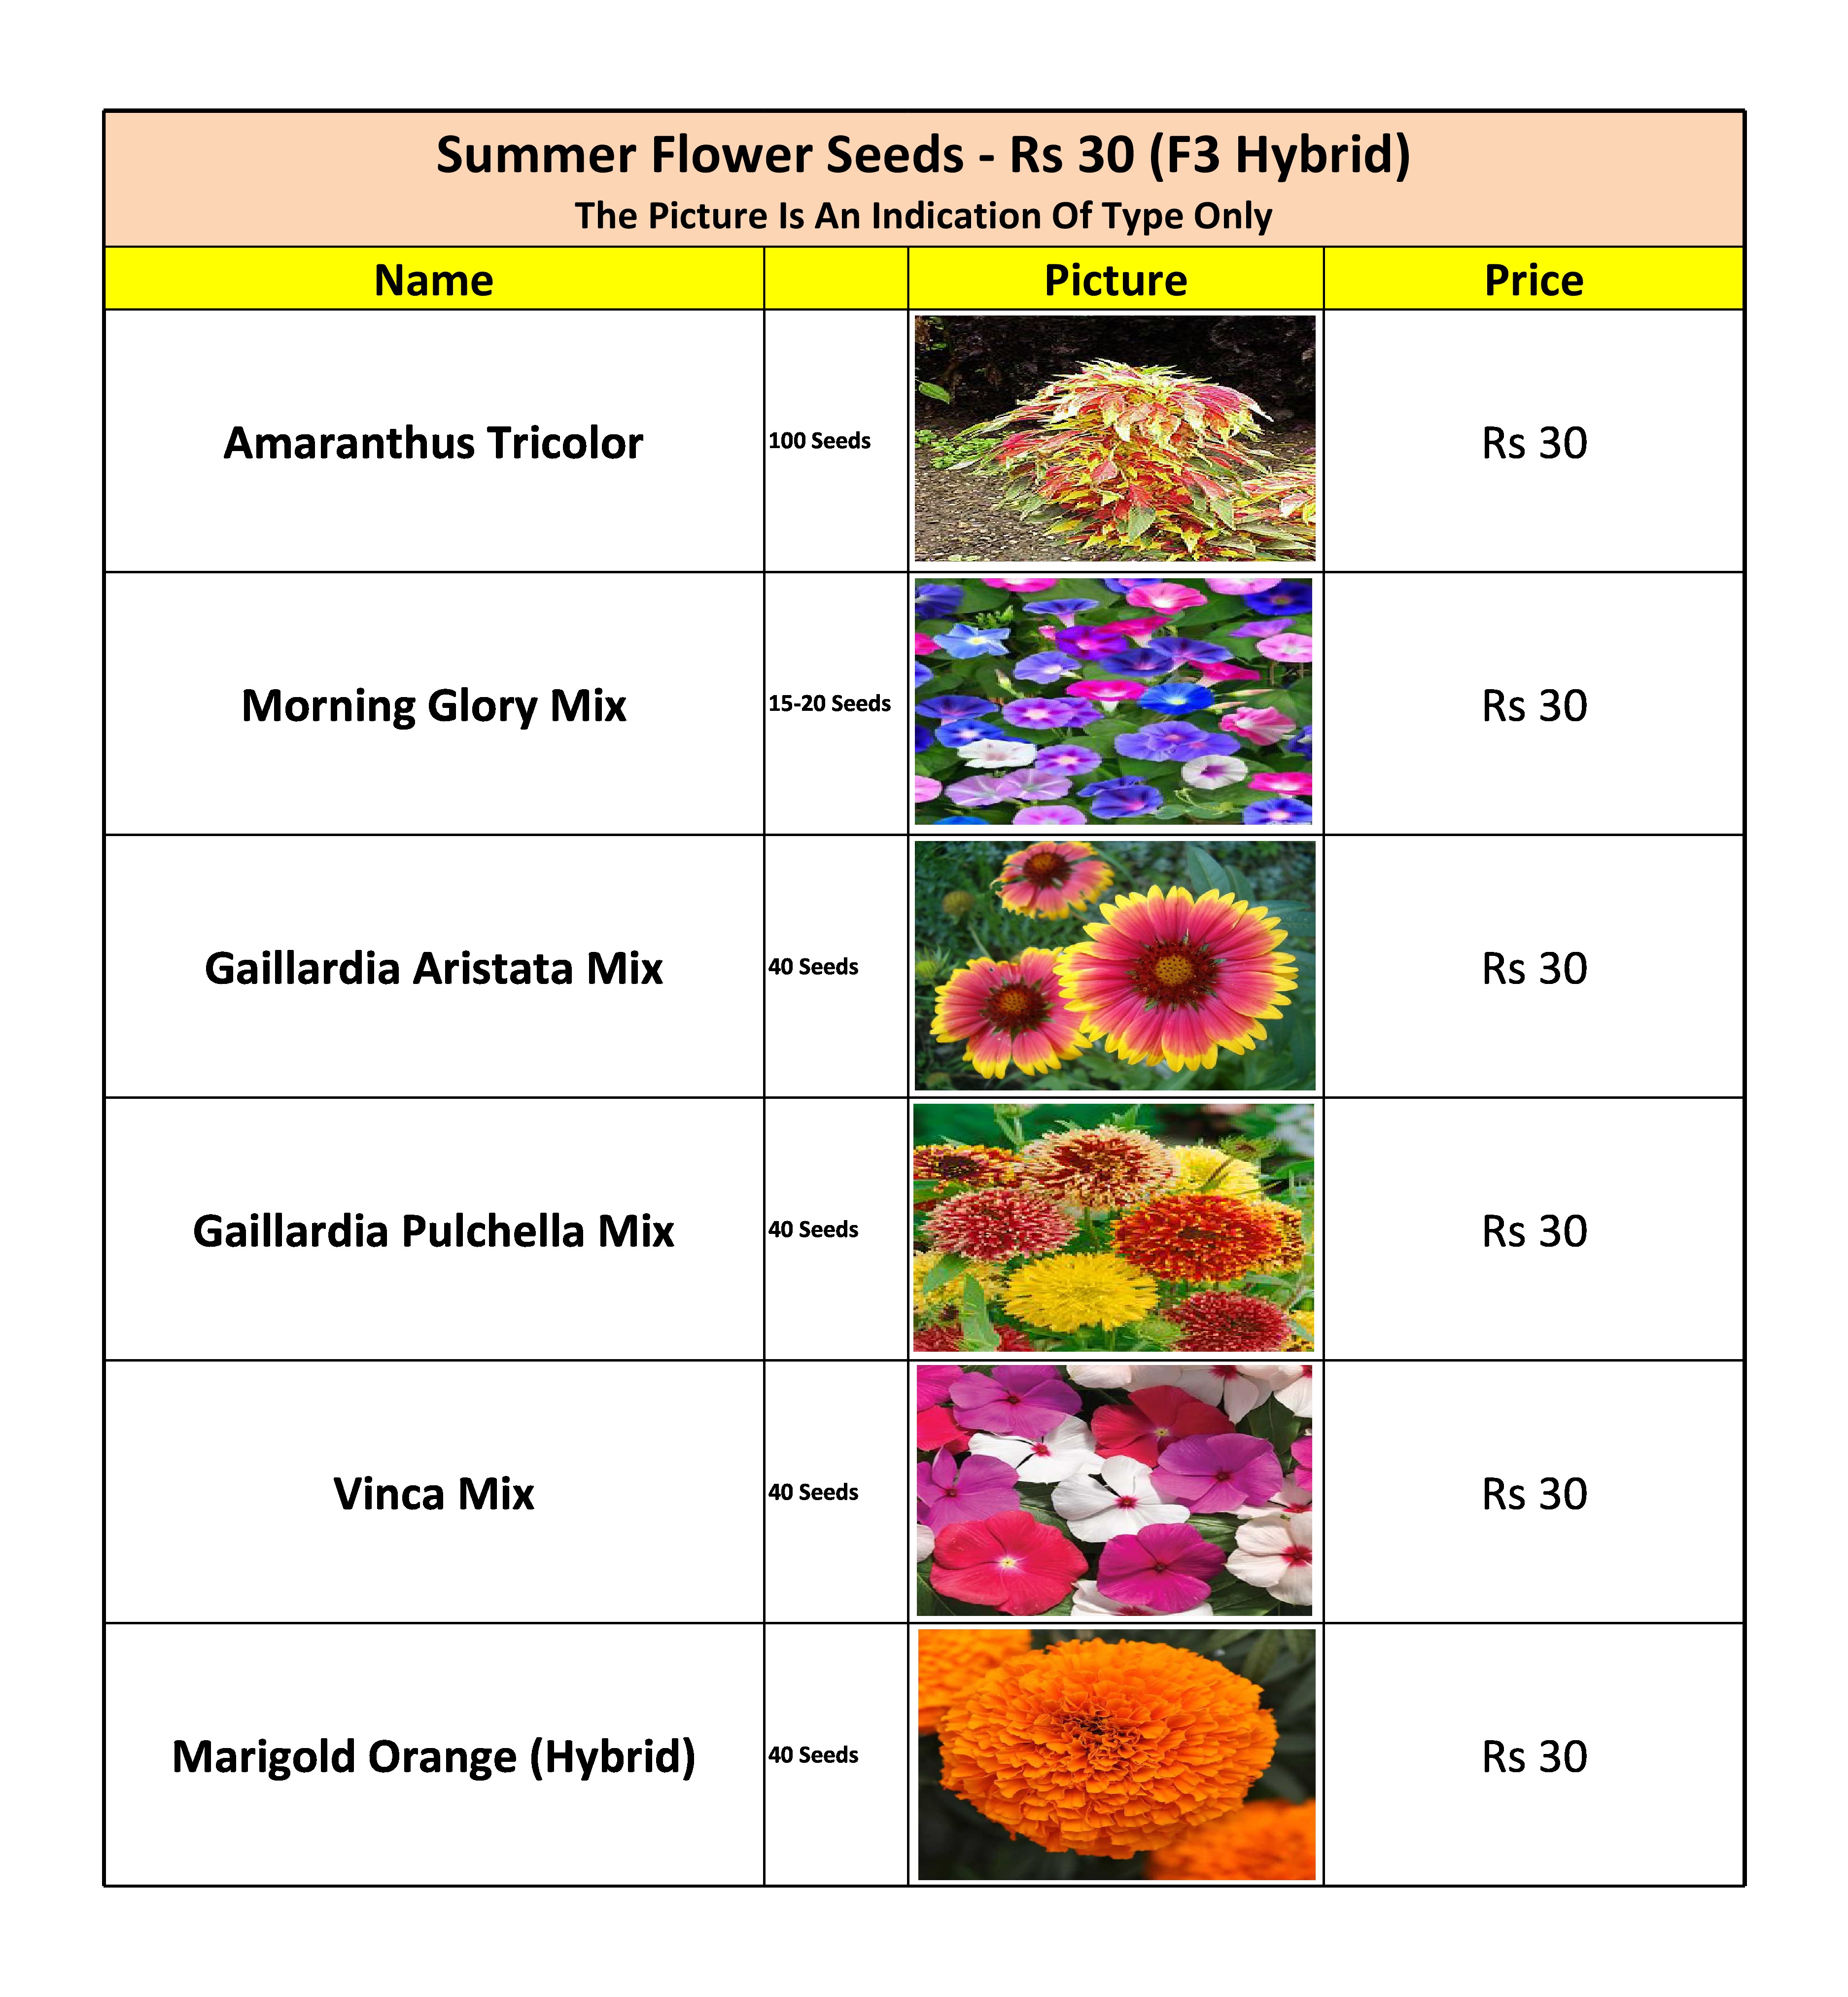 Summer Flower Seeds - Rs 30